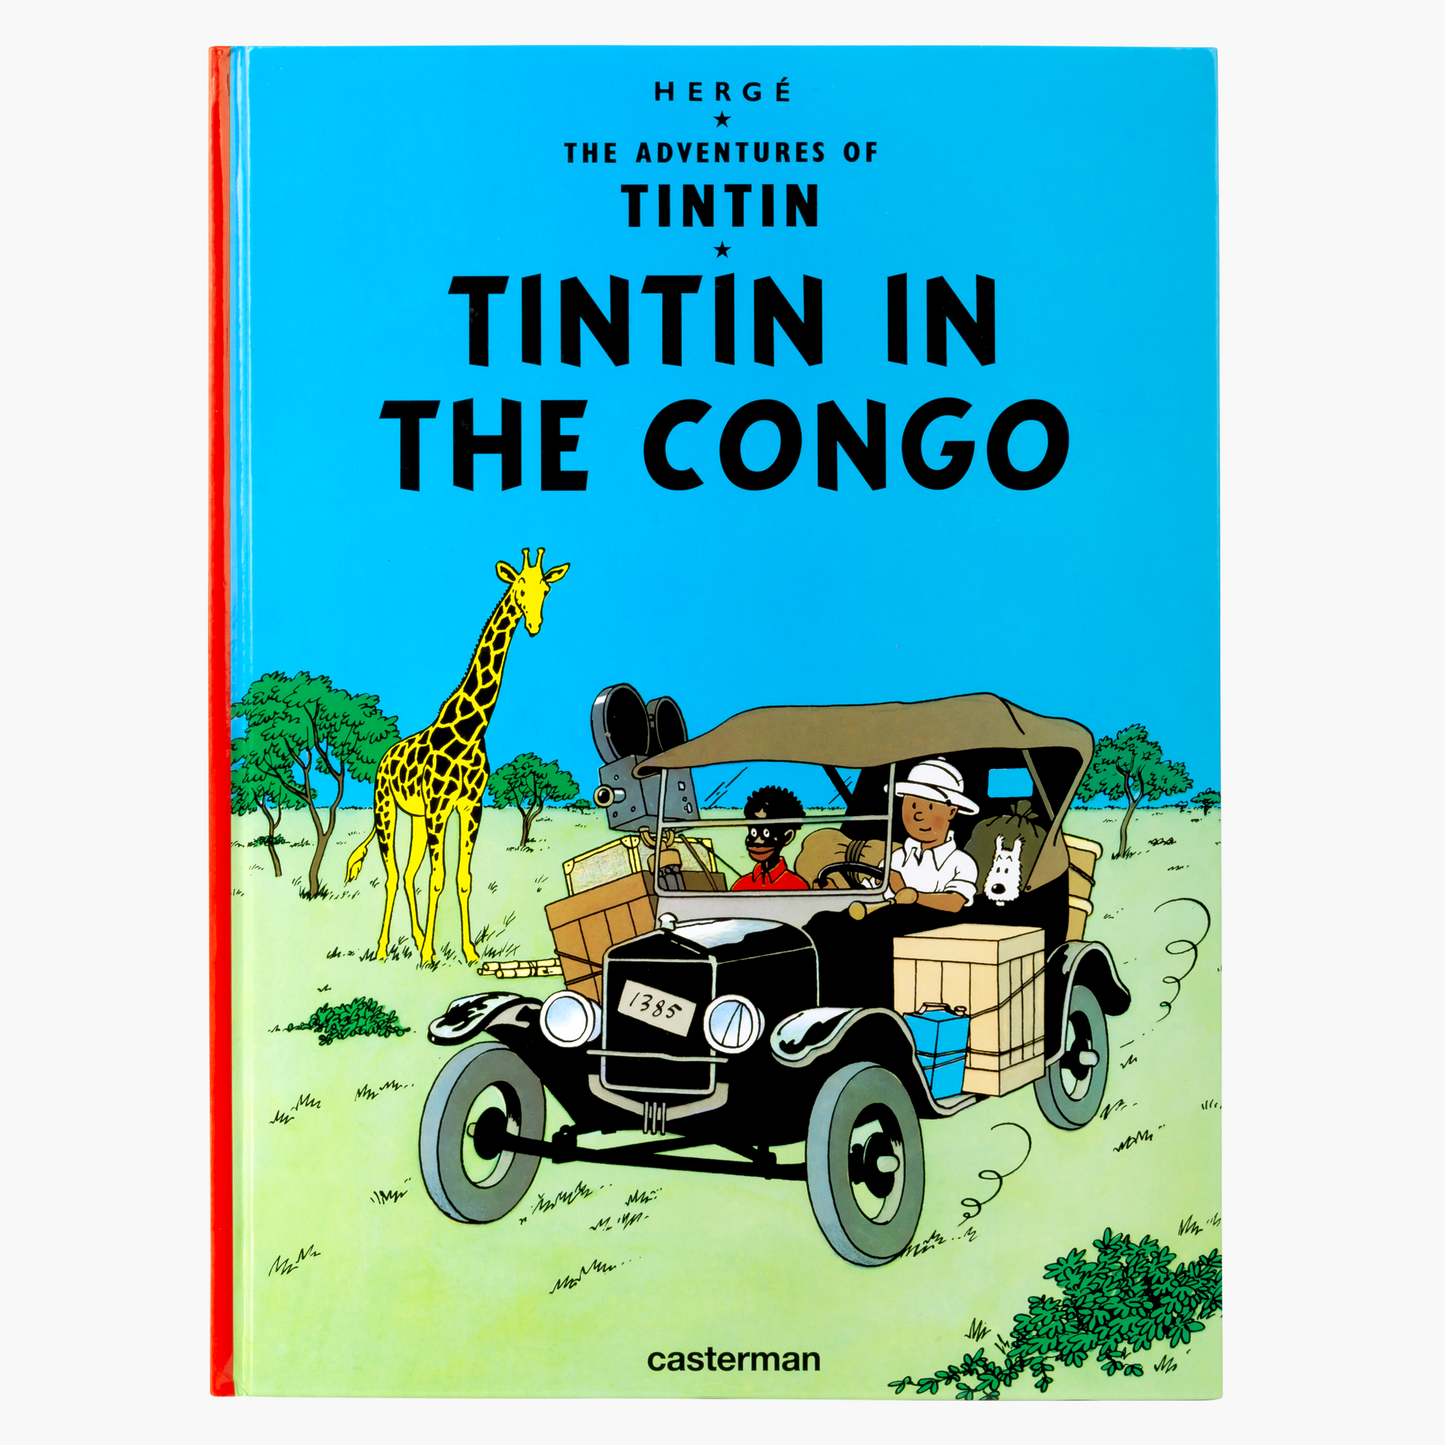 02. Tintin in the Congo